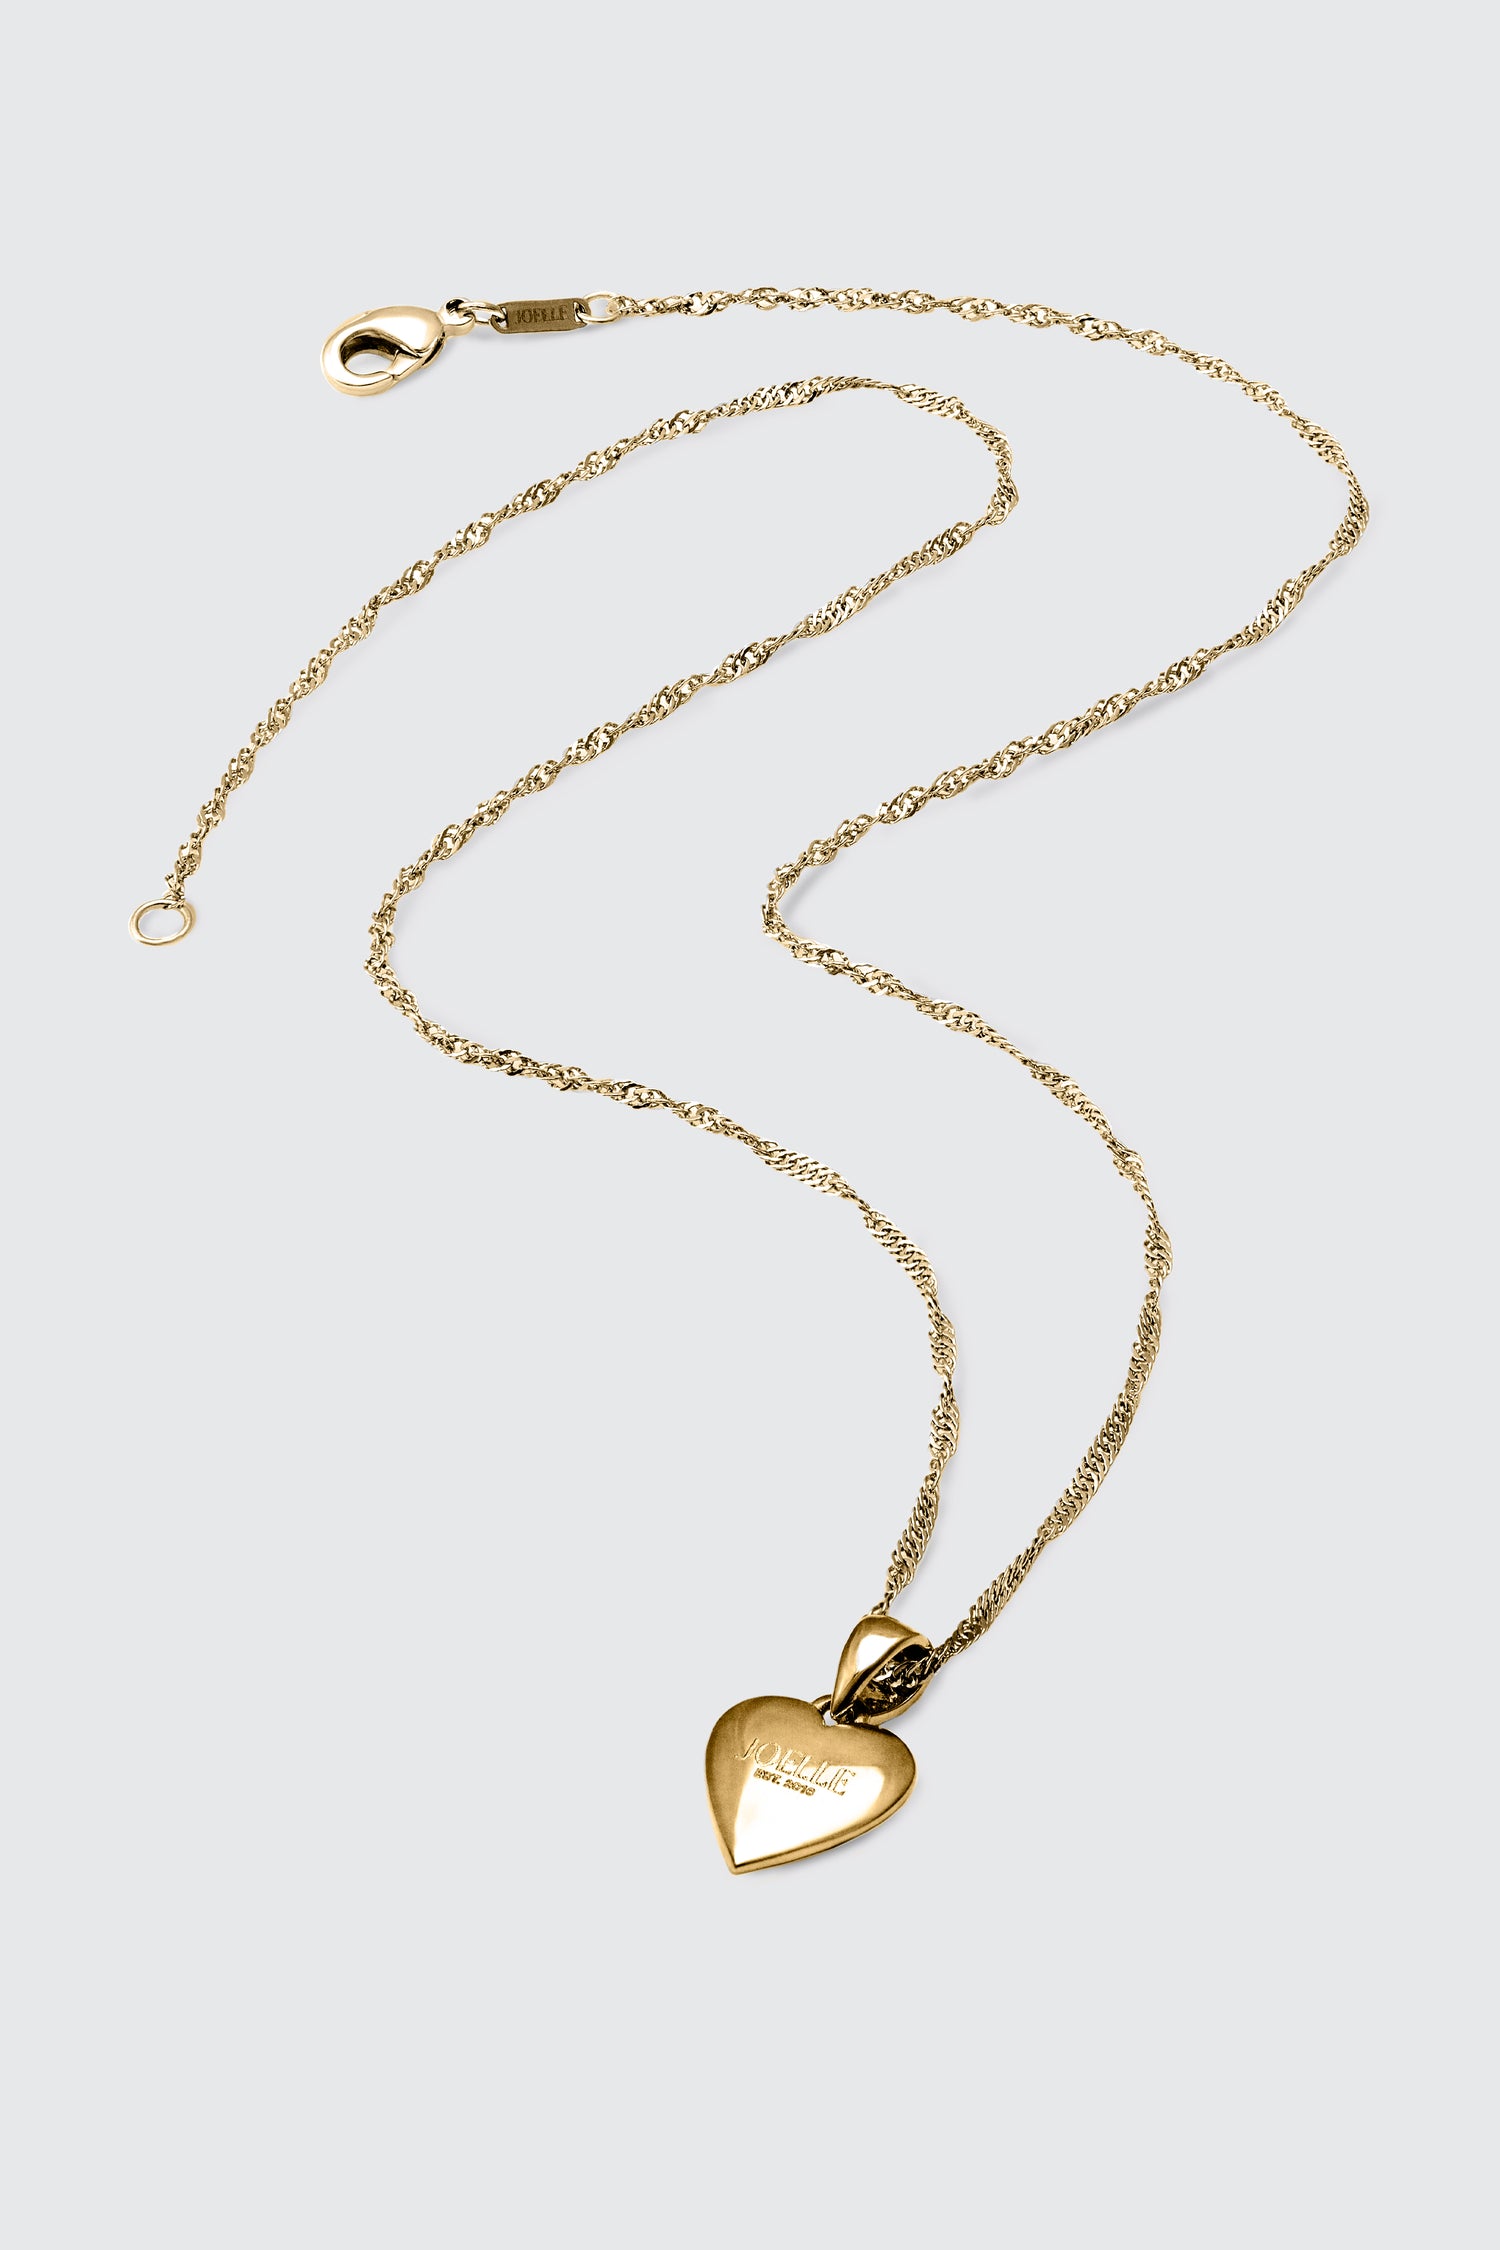 Collier or à pendentif coeur | Ridge JOELLE Collection